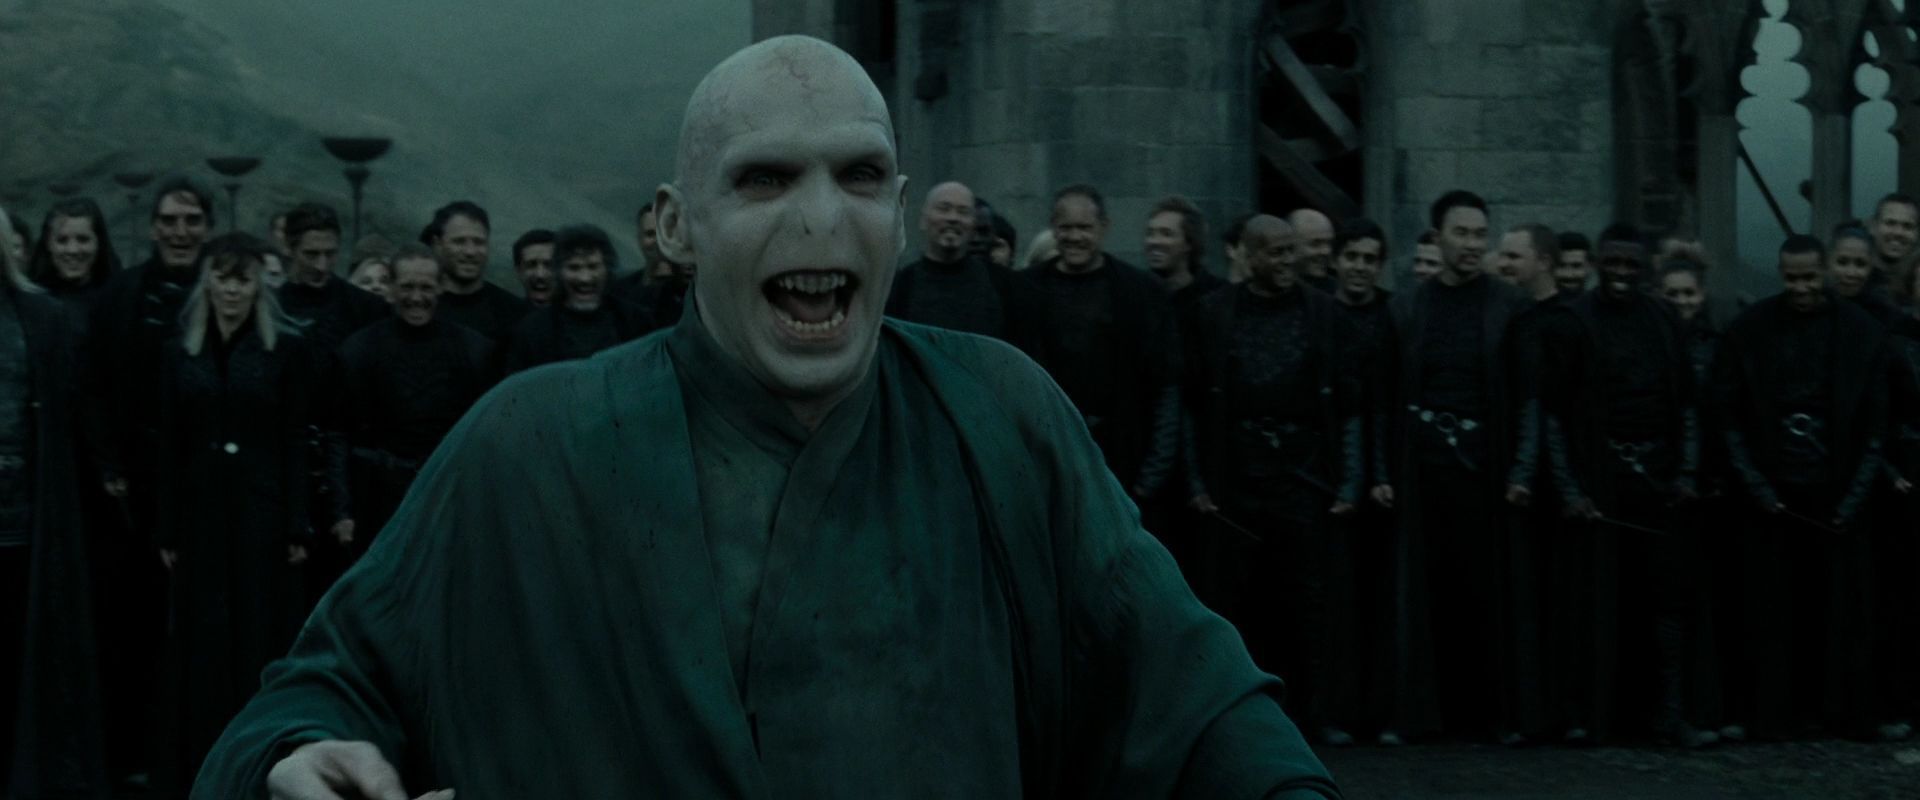 En el mismo temario: Como se llama la madre de Voldemort?